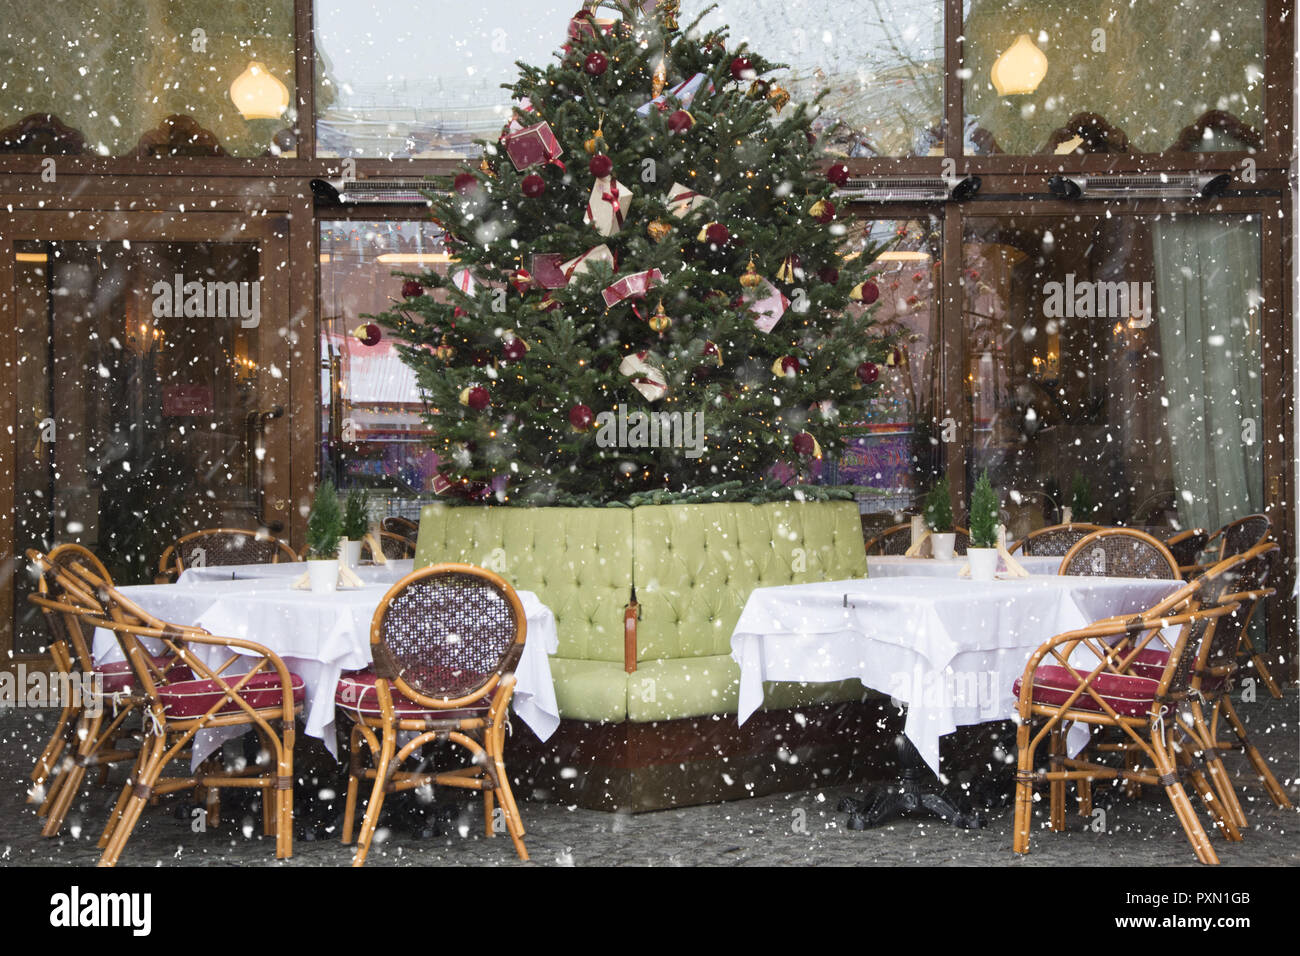 Decorazioni Natalizie Bar.Decorazioni Di Natale Per Bar O Ristorante All Esterno Foto Stock Alamy